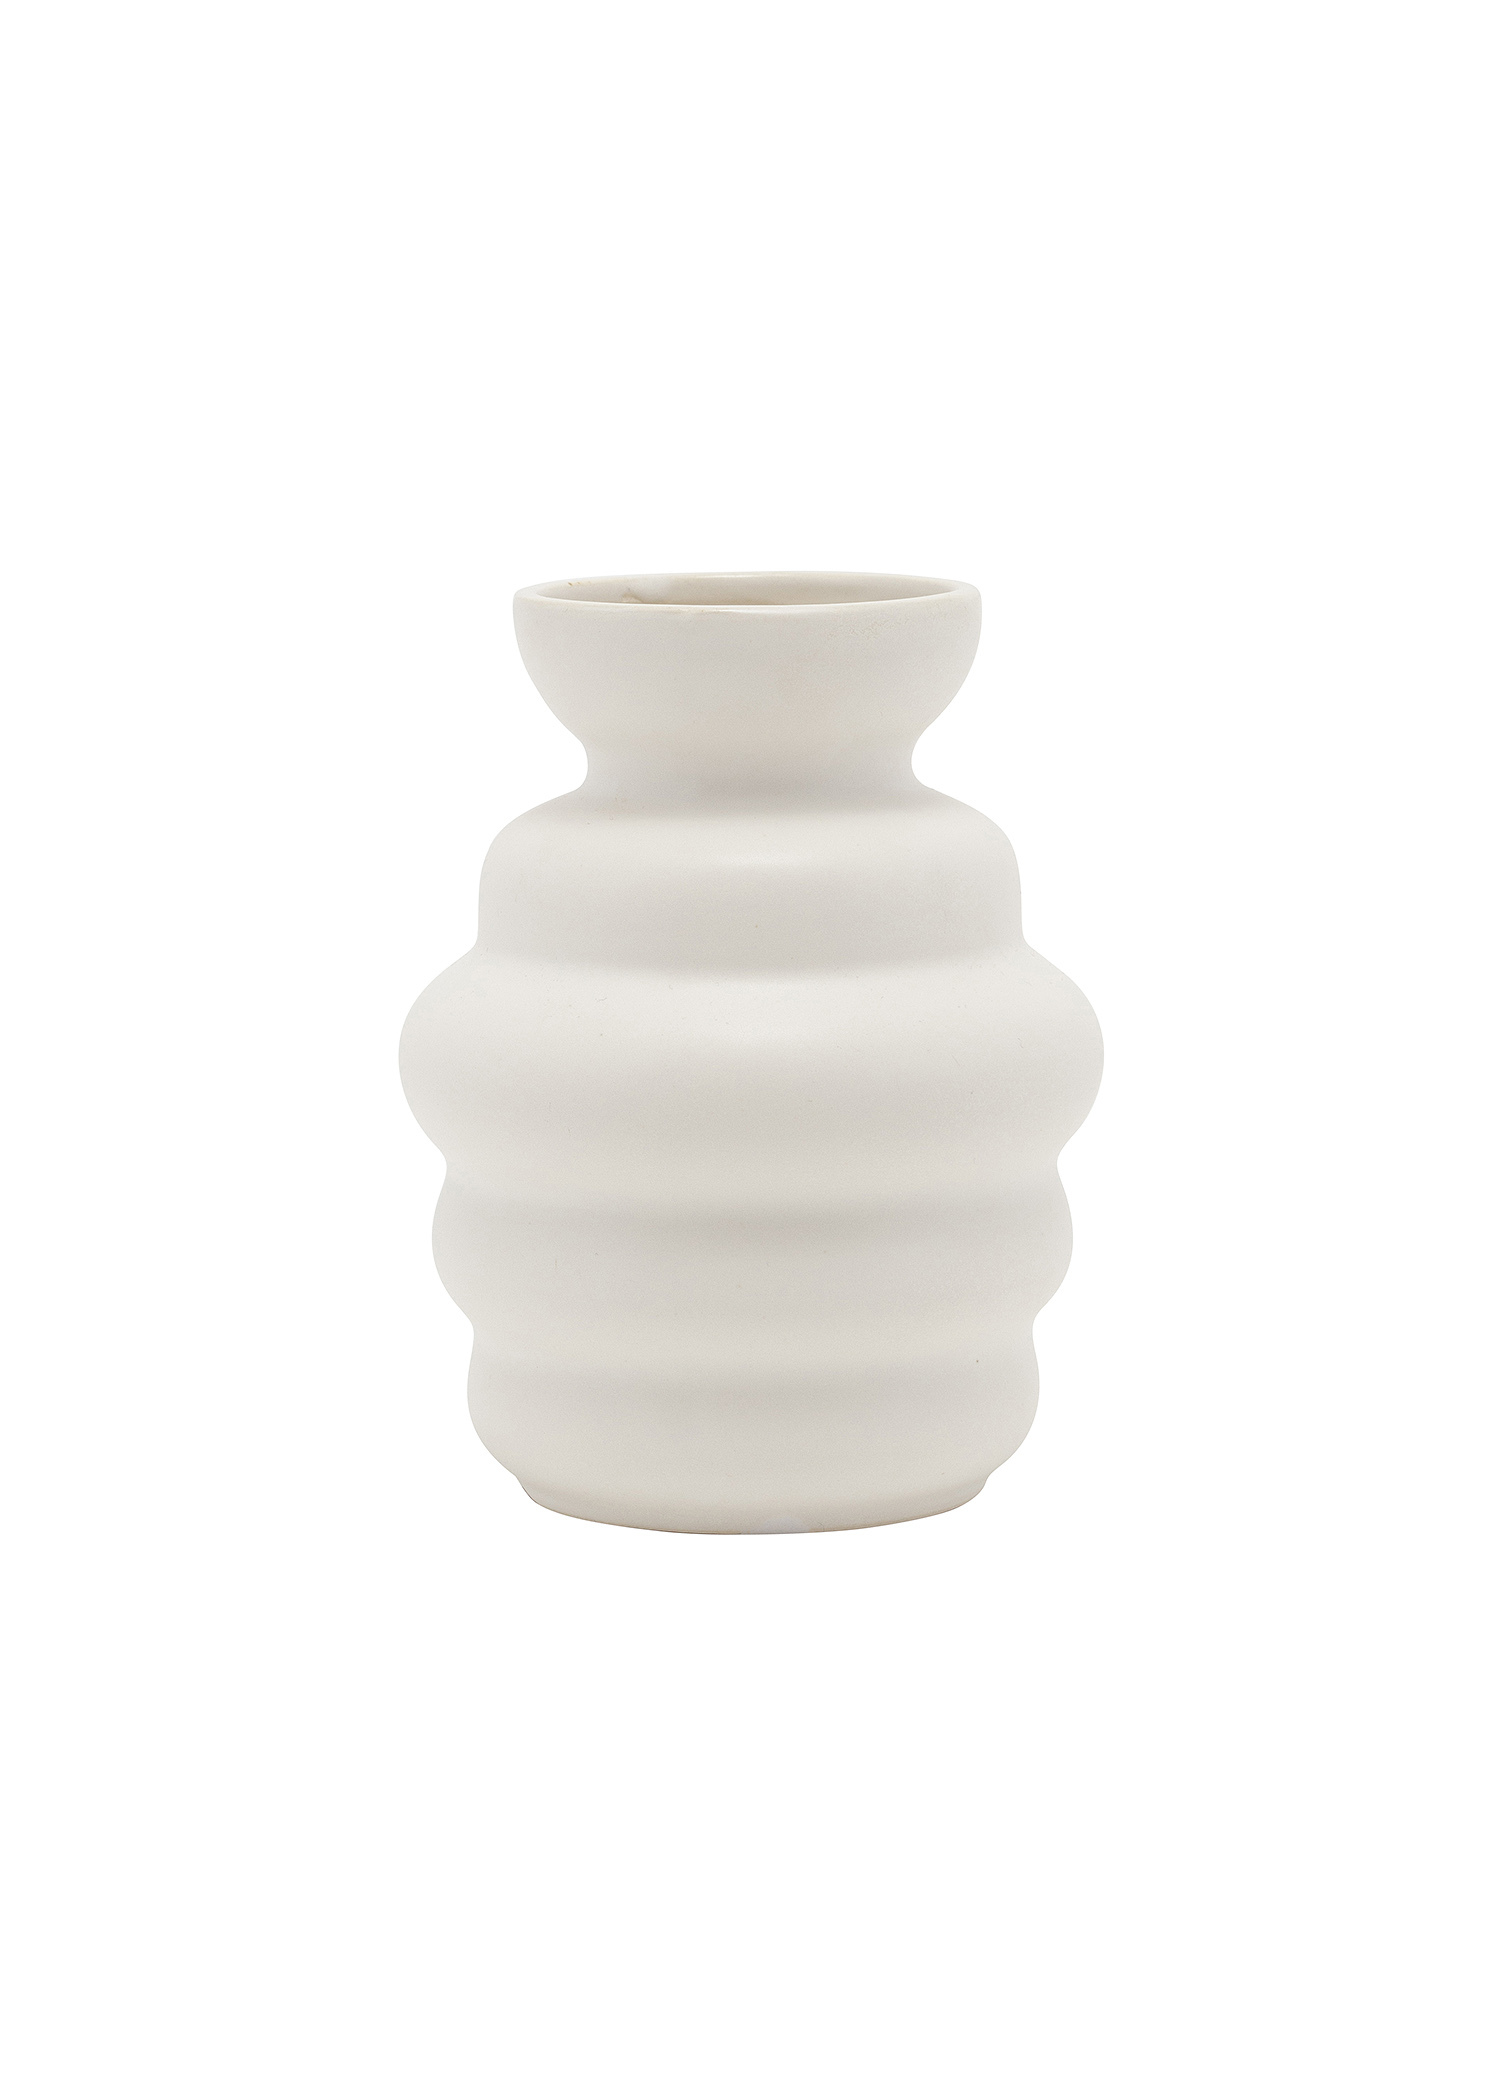 Small stoneware vase Image 0